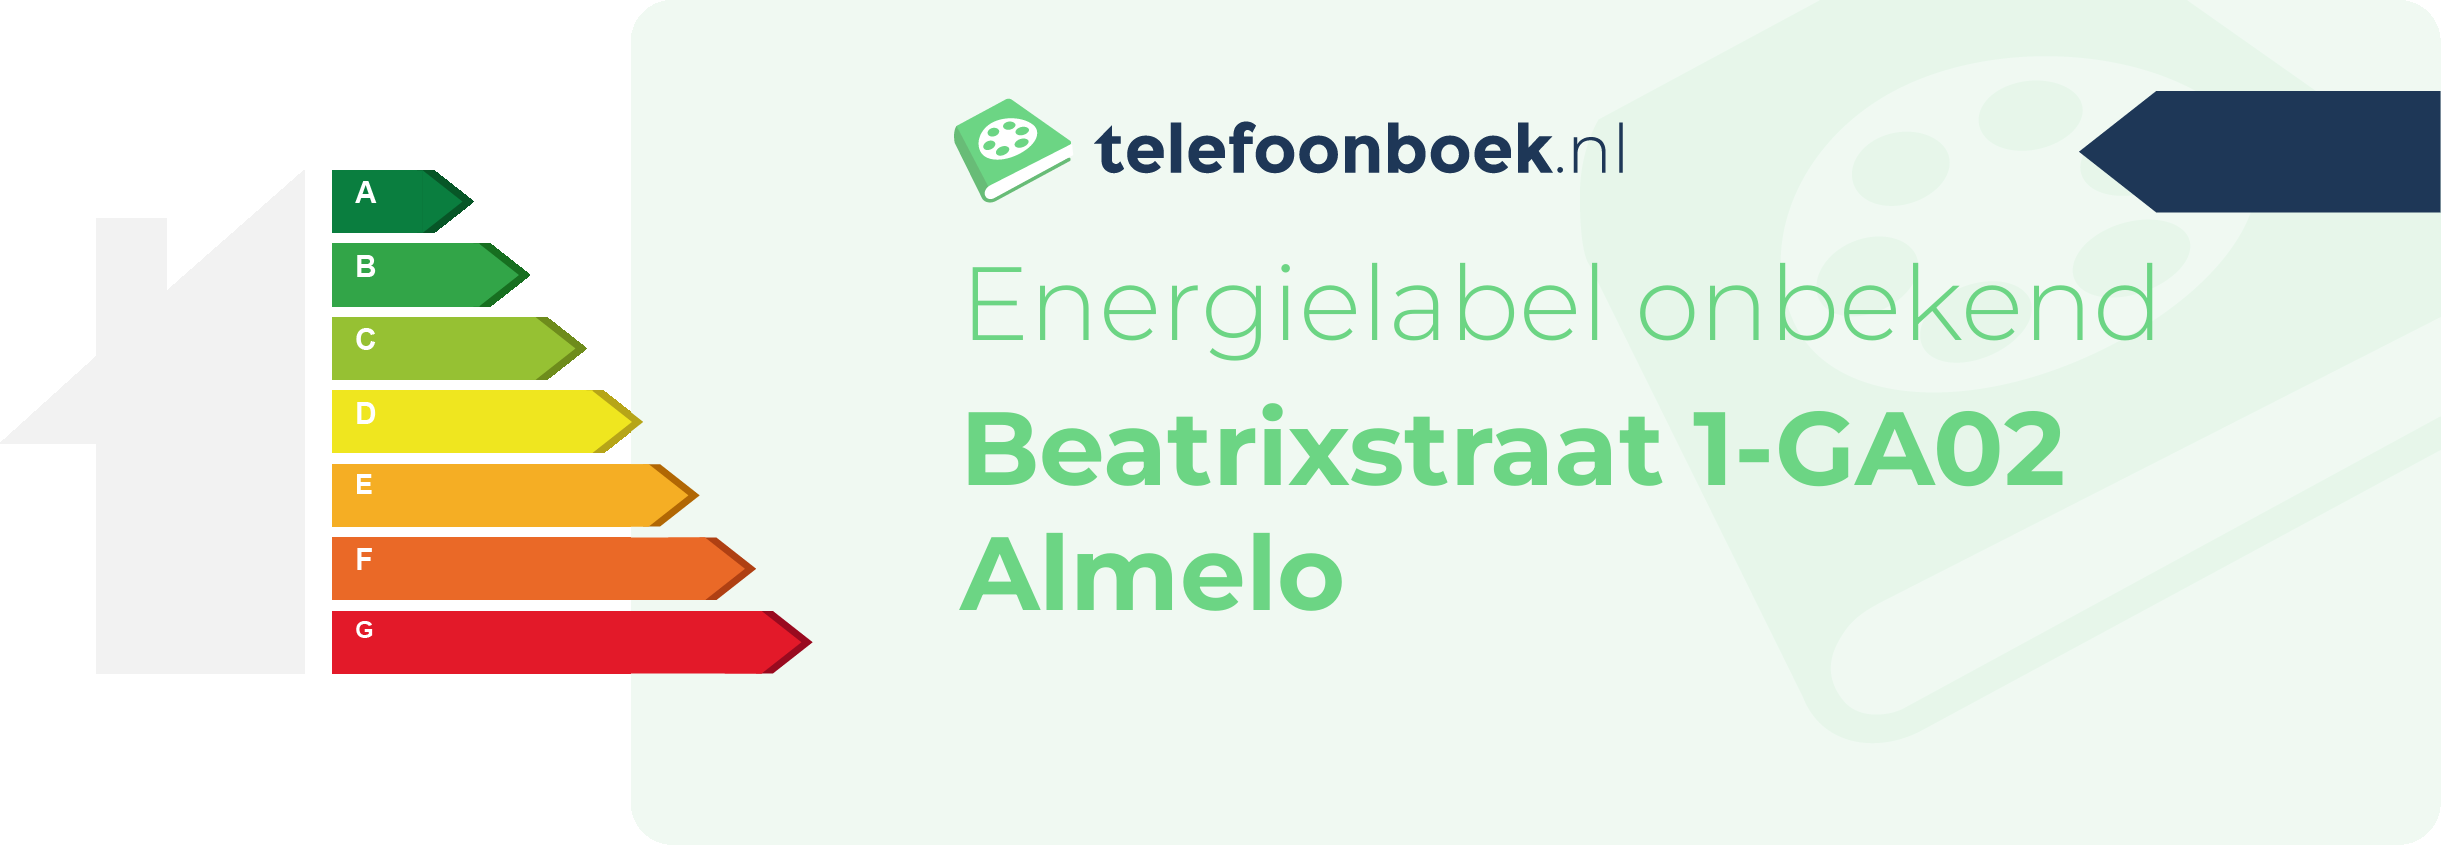 Energielabel Beatrixstraat 1-GA02 Almelo